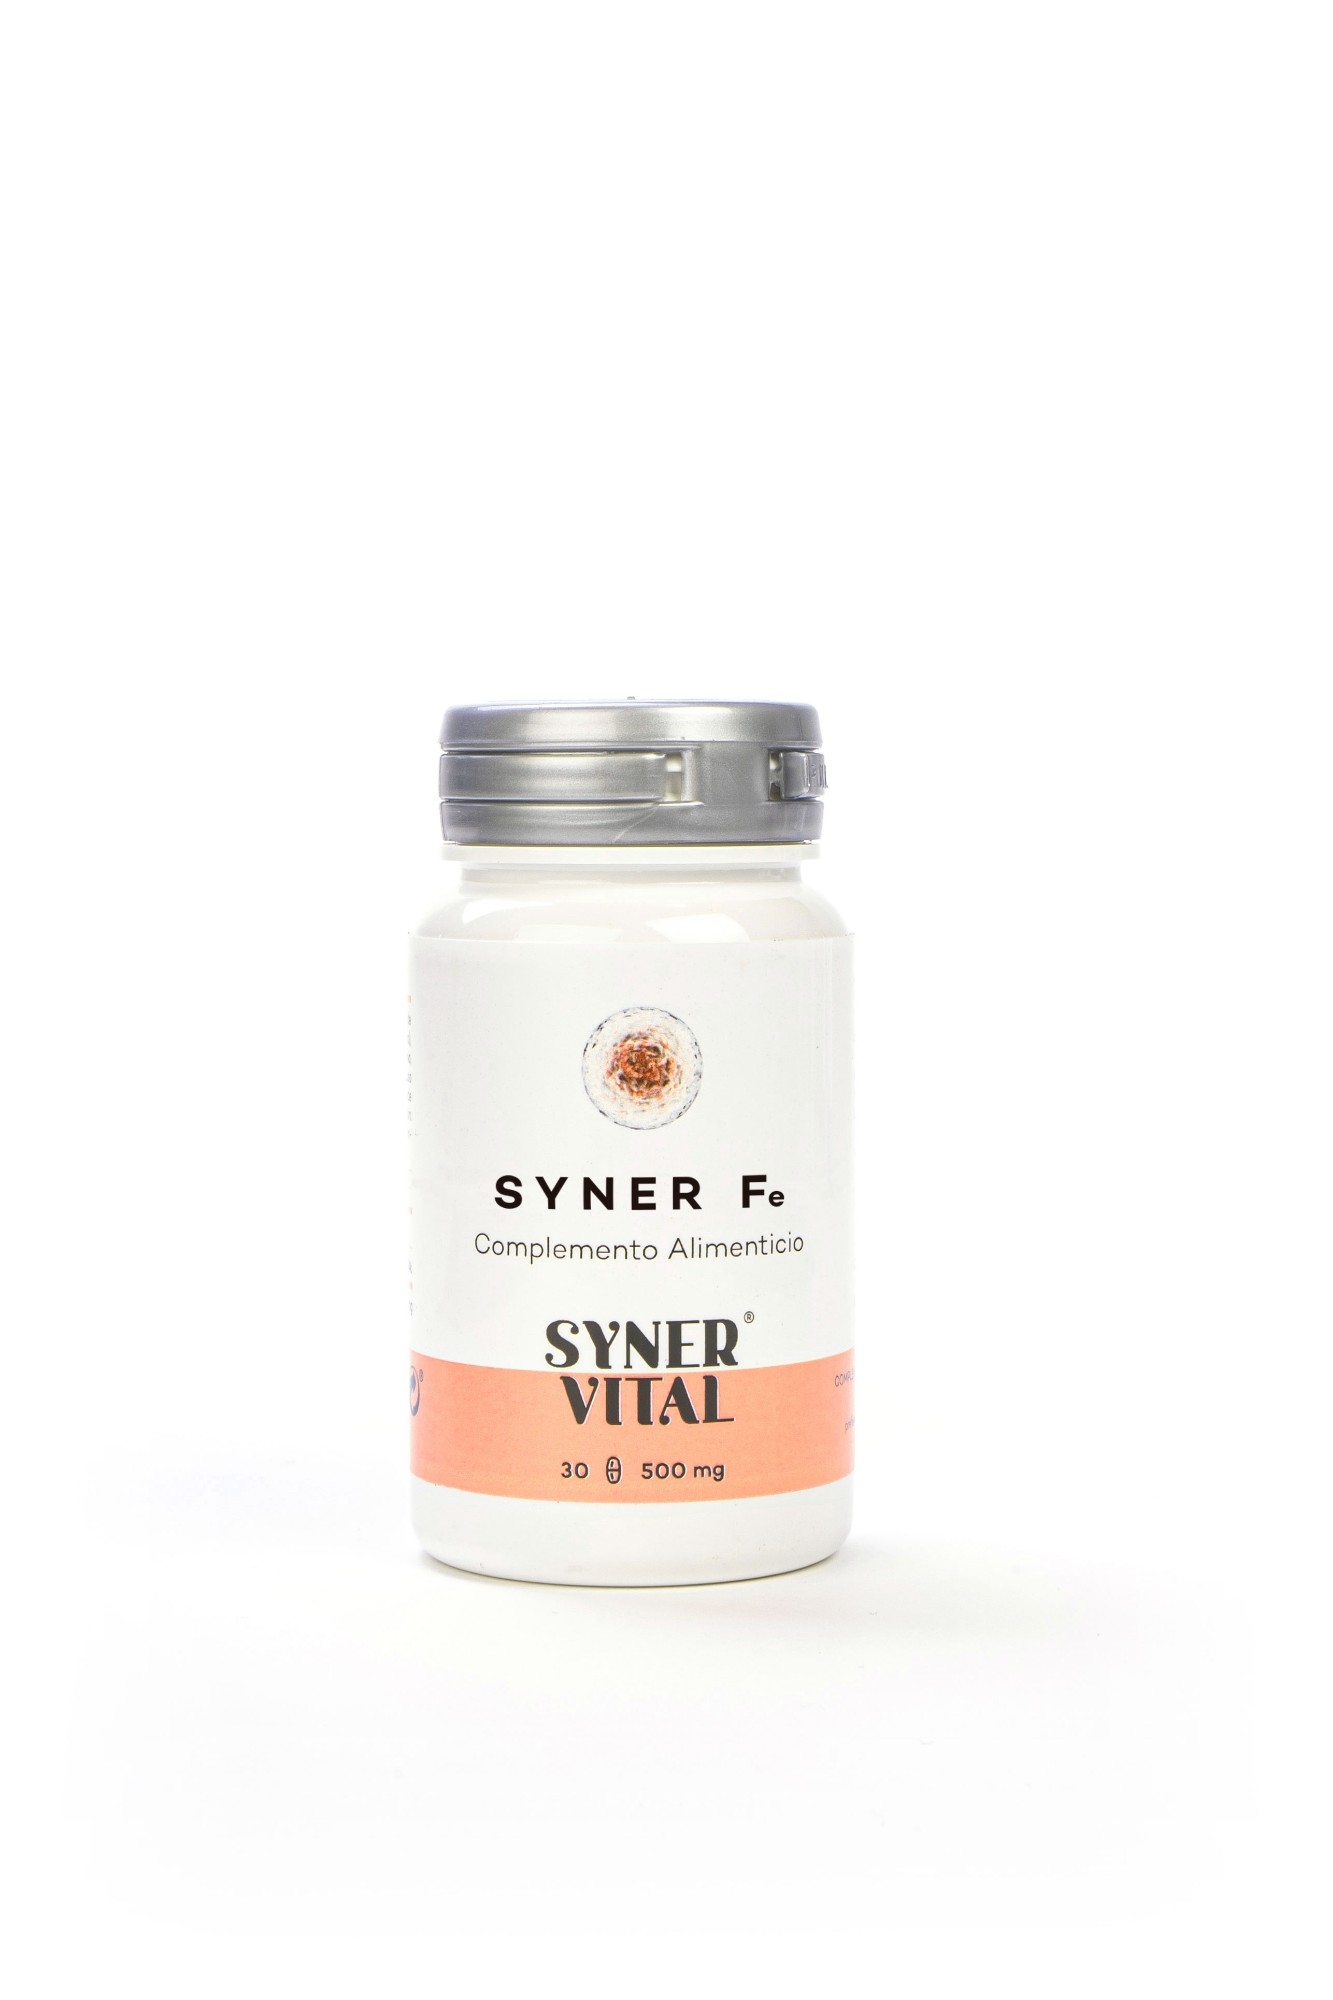 Syner Fe (Bisciglinato de Hierro) 60Comprimidos 600Mg. Synervital